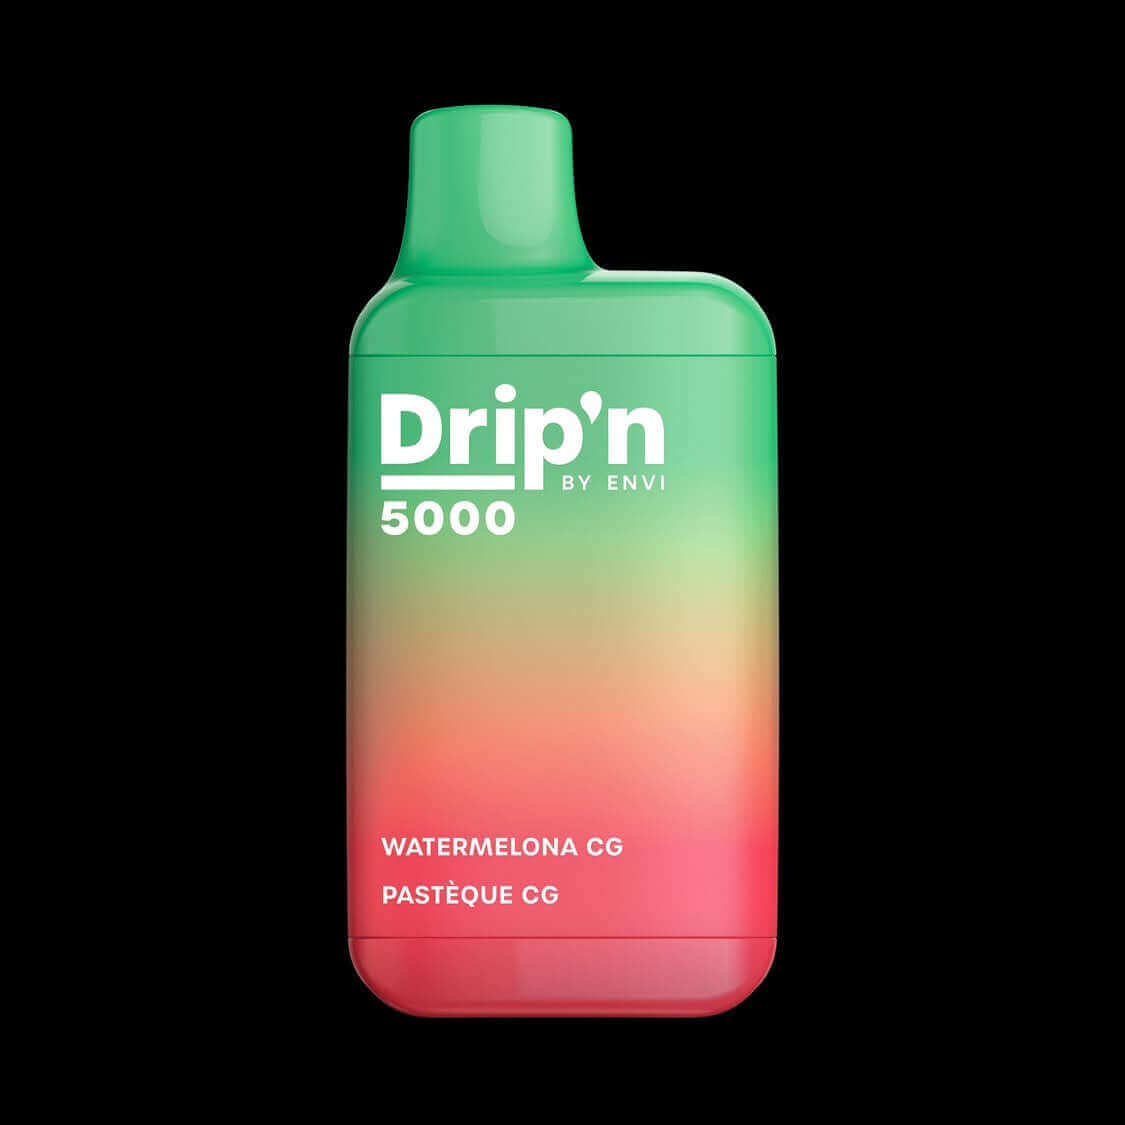 Drip'n - Watermelon CG